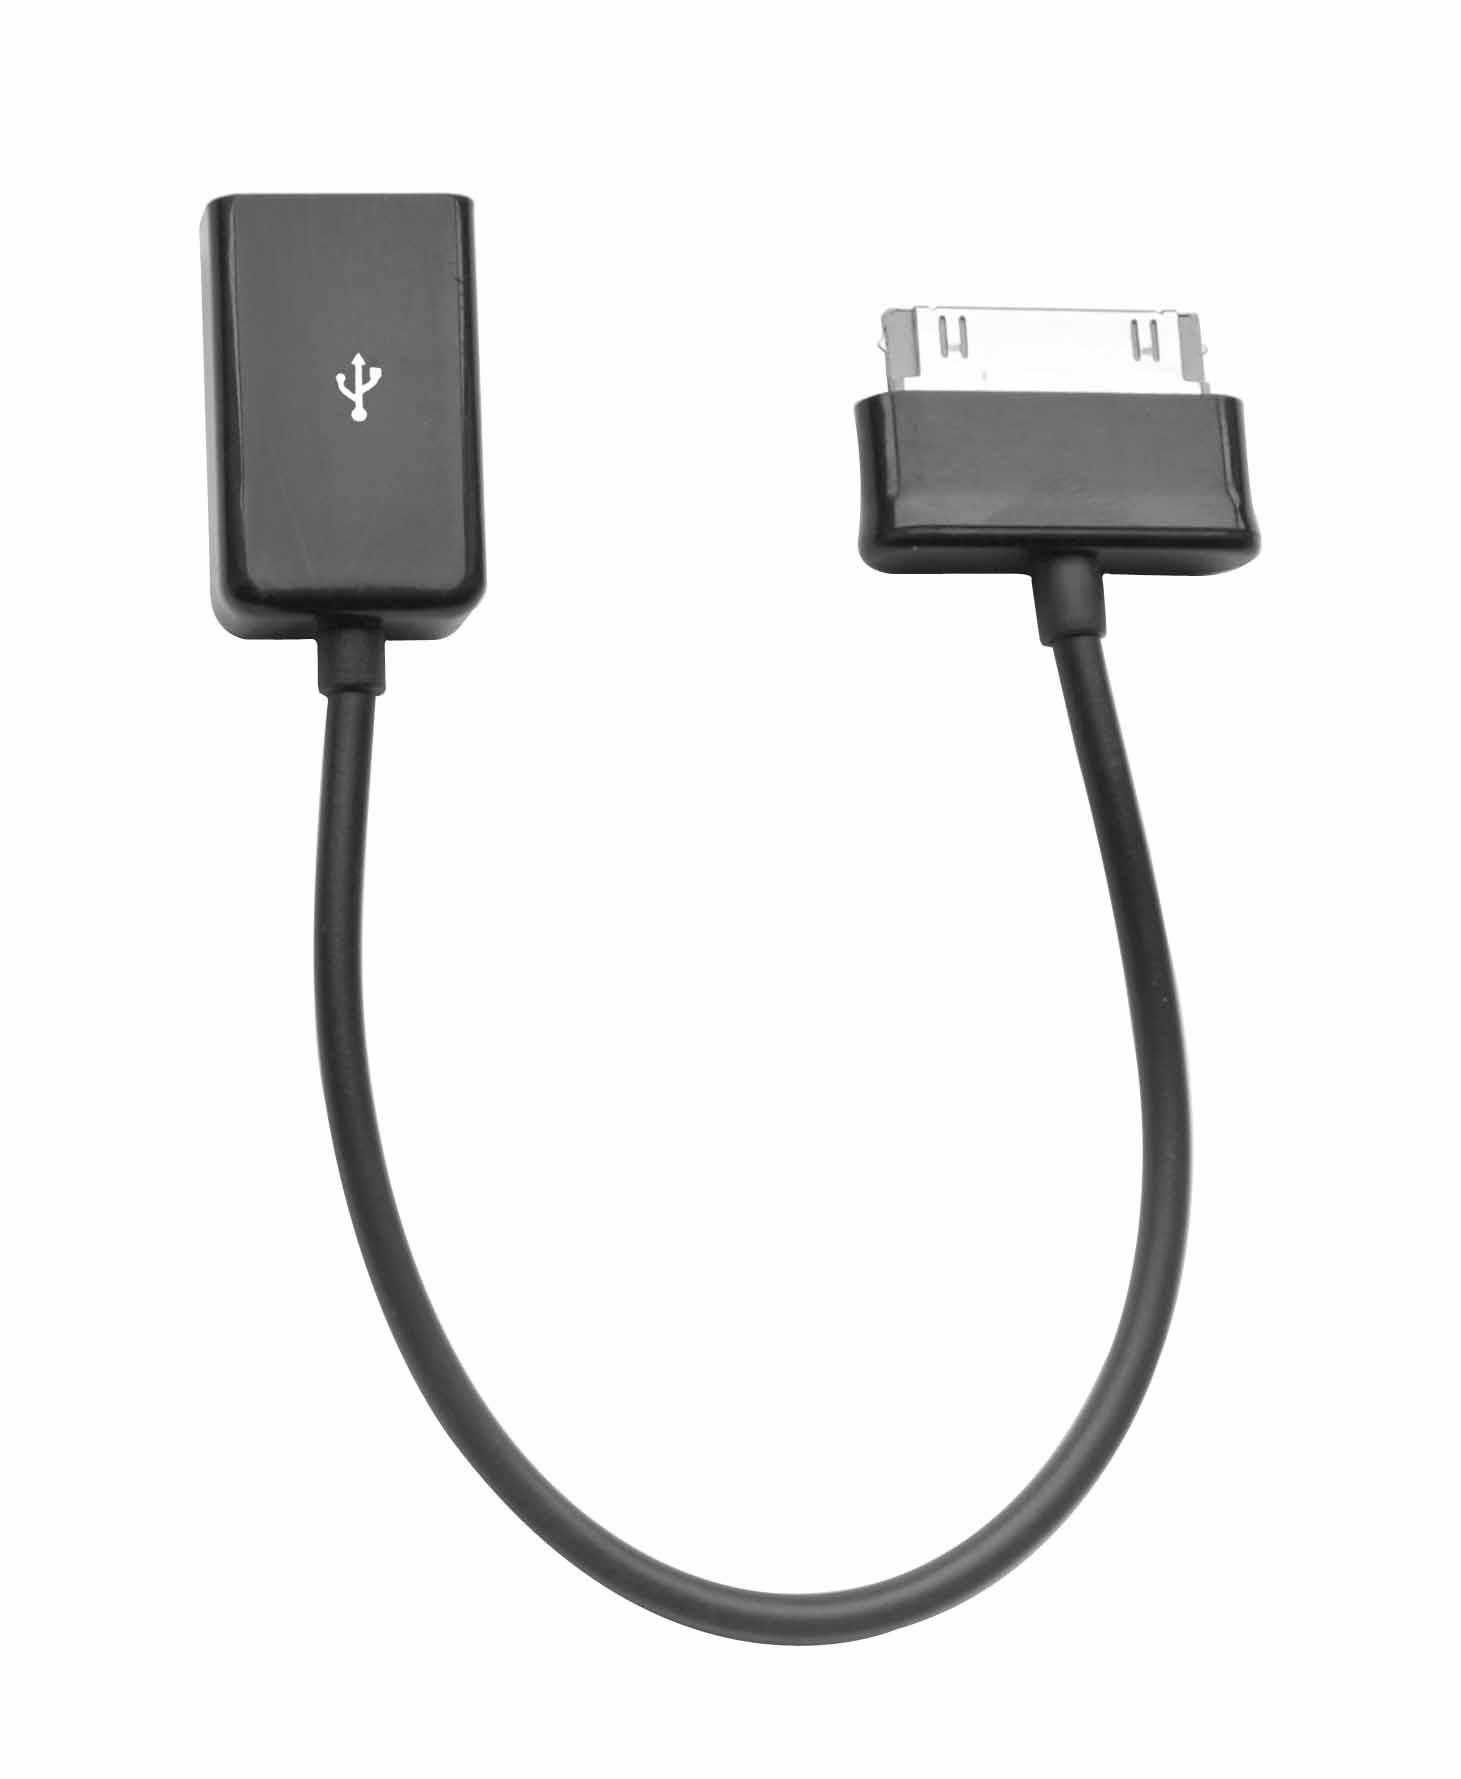 Cable Adaptateur Heden USB Pour tablette GALAXY TAB 2 / Note au